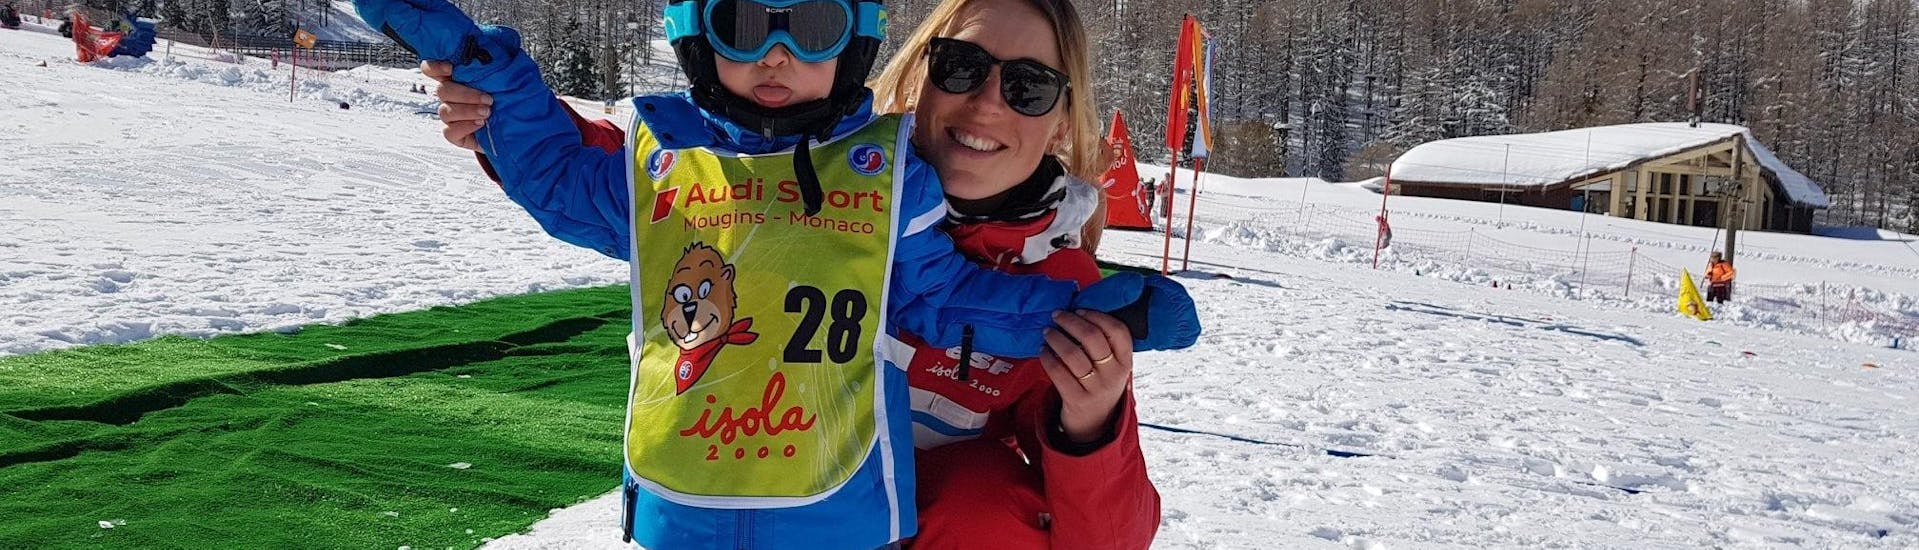 Un moniteur de ski de l'école de ski ESF Isola 2000 est aux côtés d'un enfant dans le jardin d'enfants, prêt à commencer le Cours particulier de ski Enfants pour Tous niveaux.